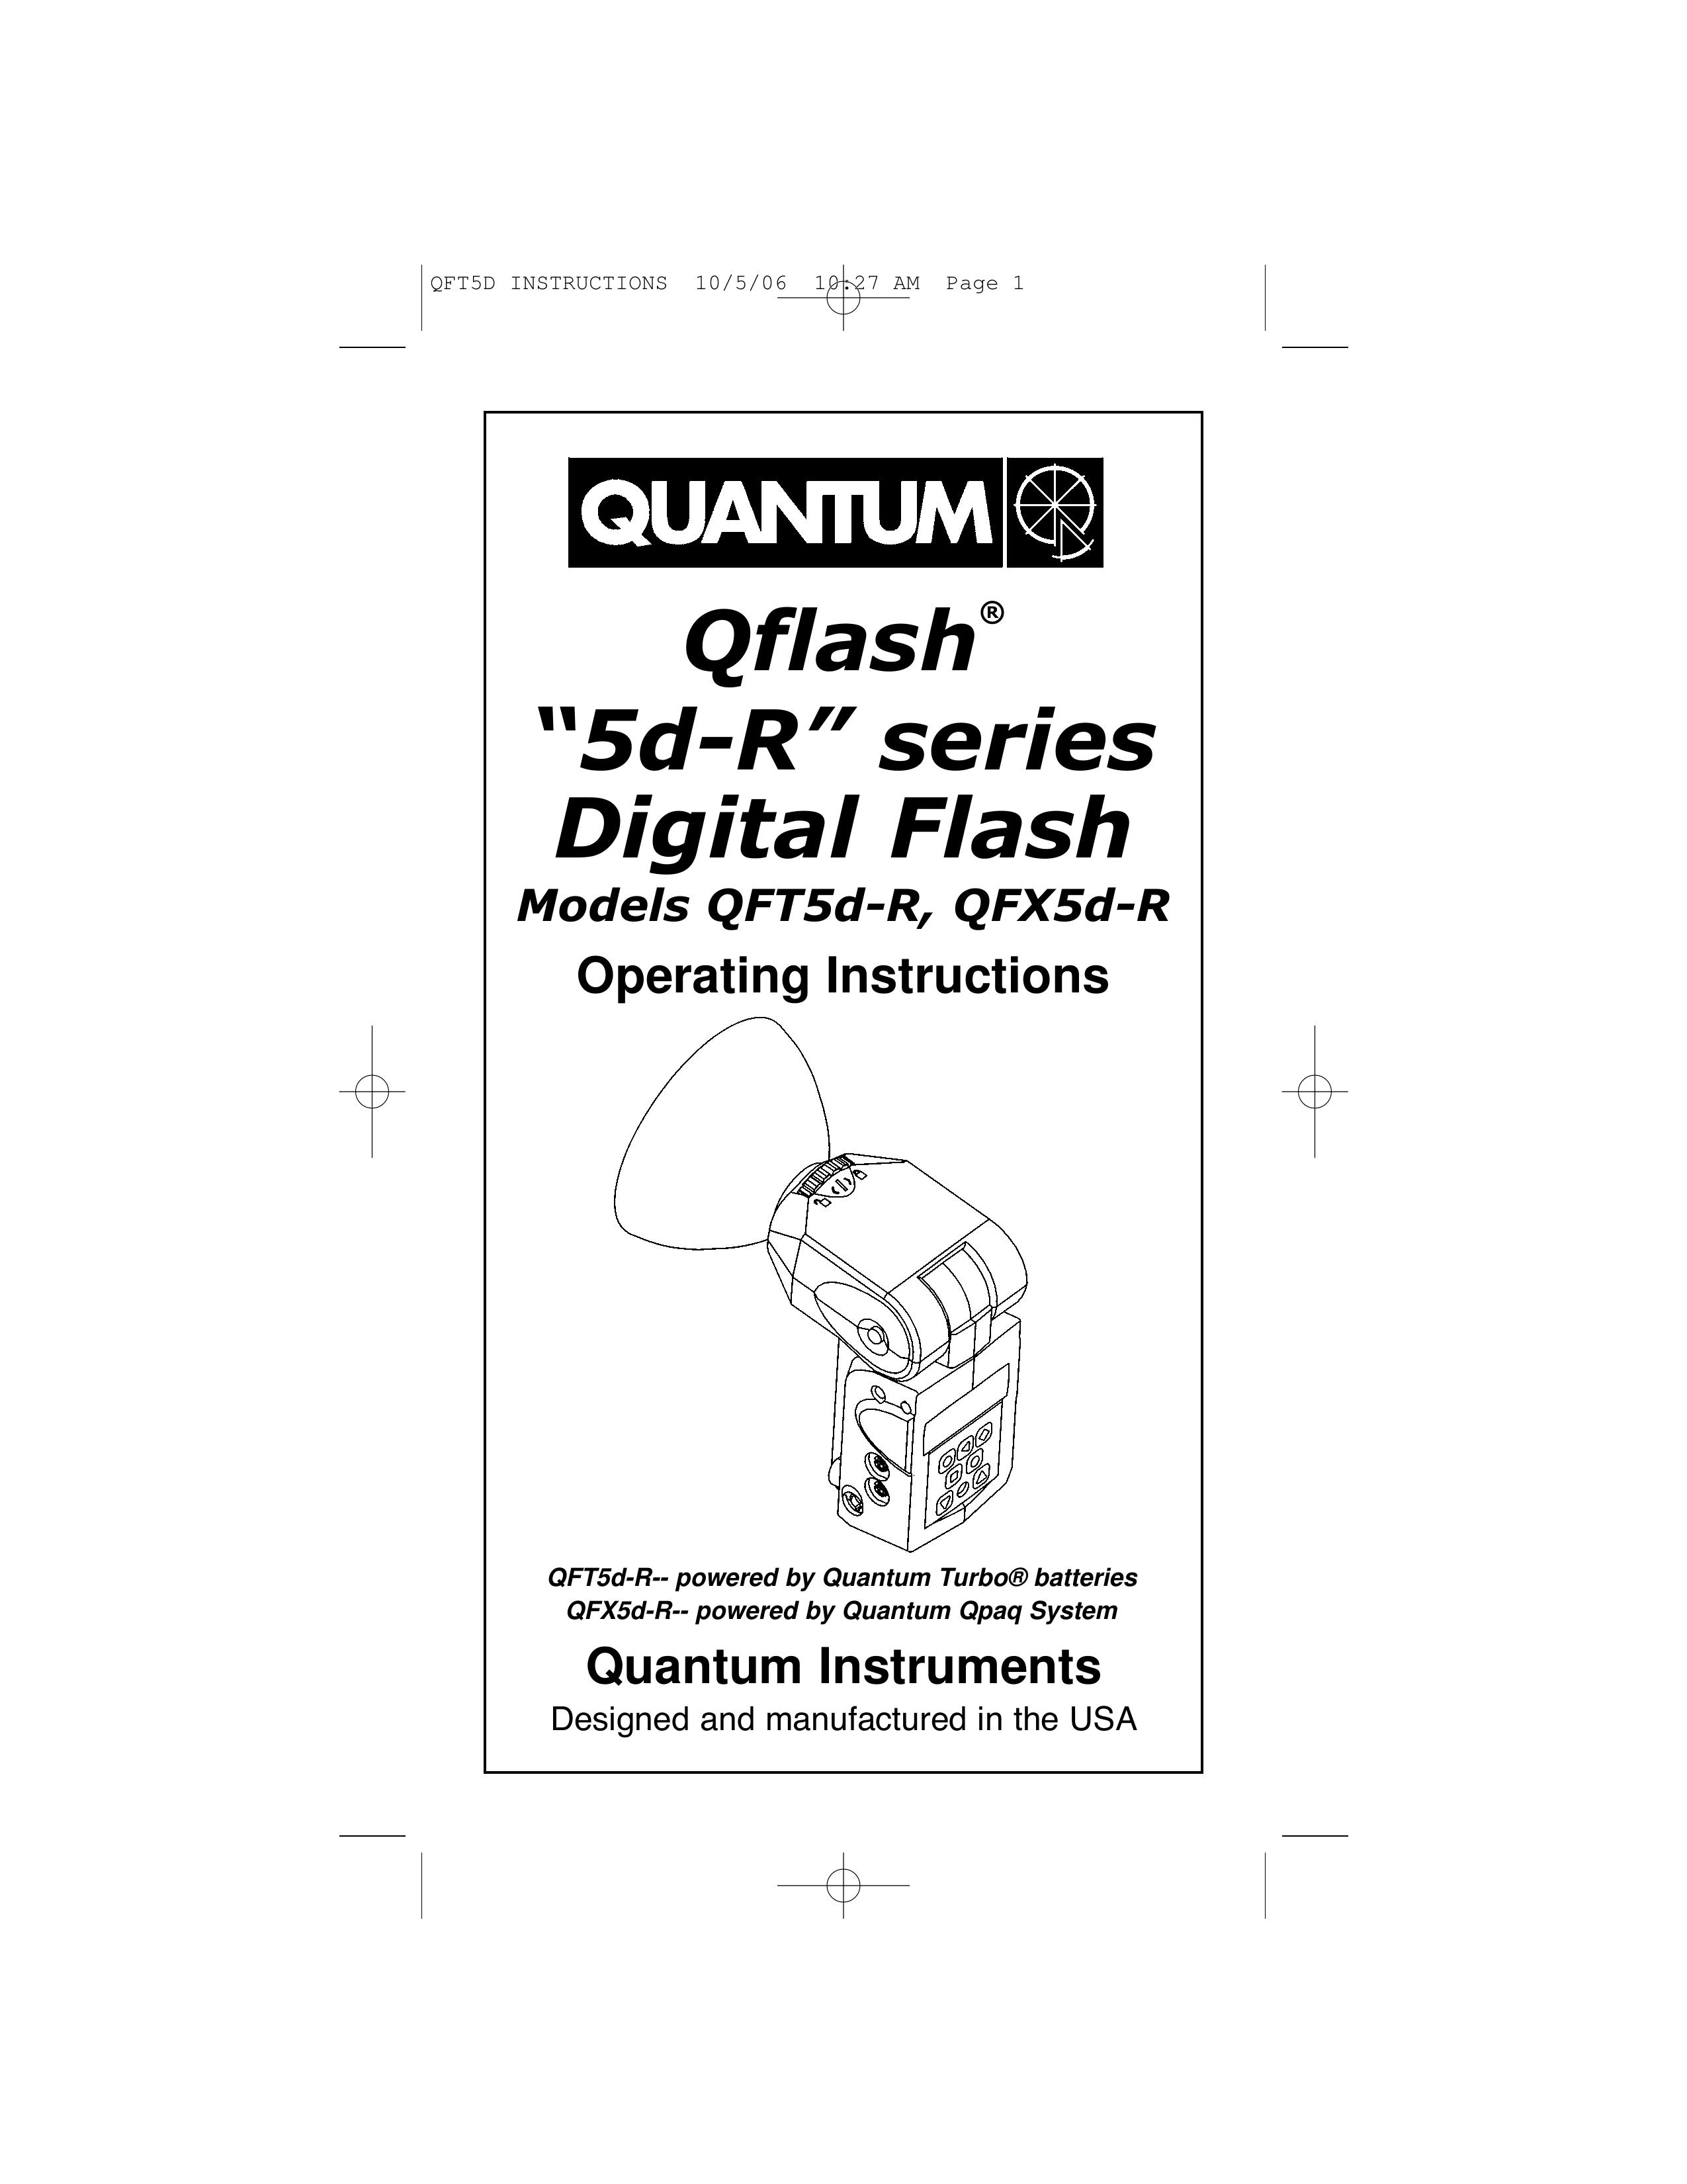 Quantum Instruments QFT5d-R Camera Flash User Manual